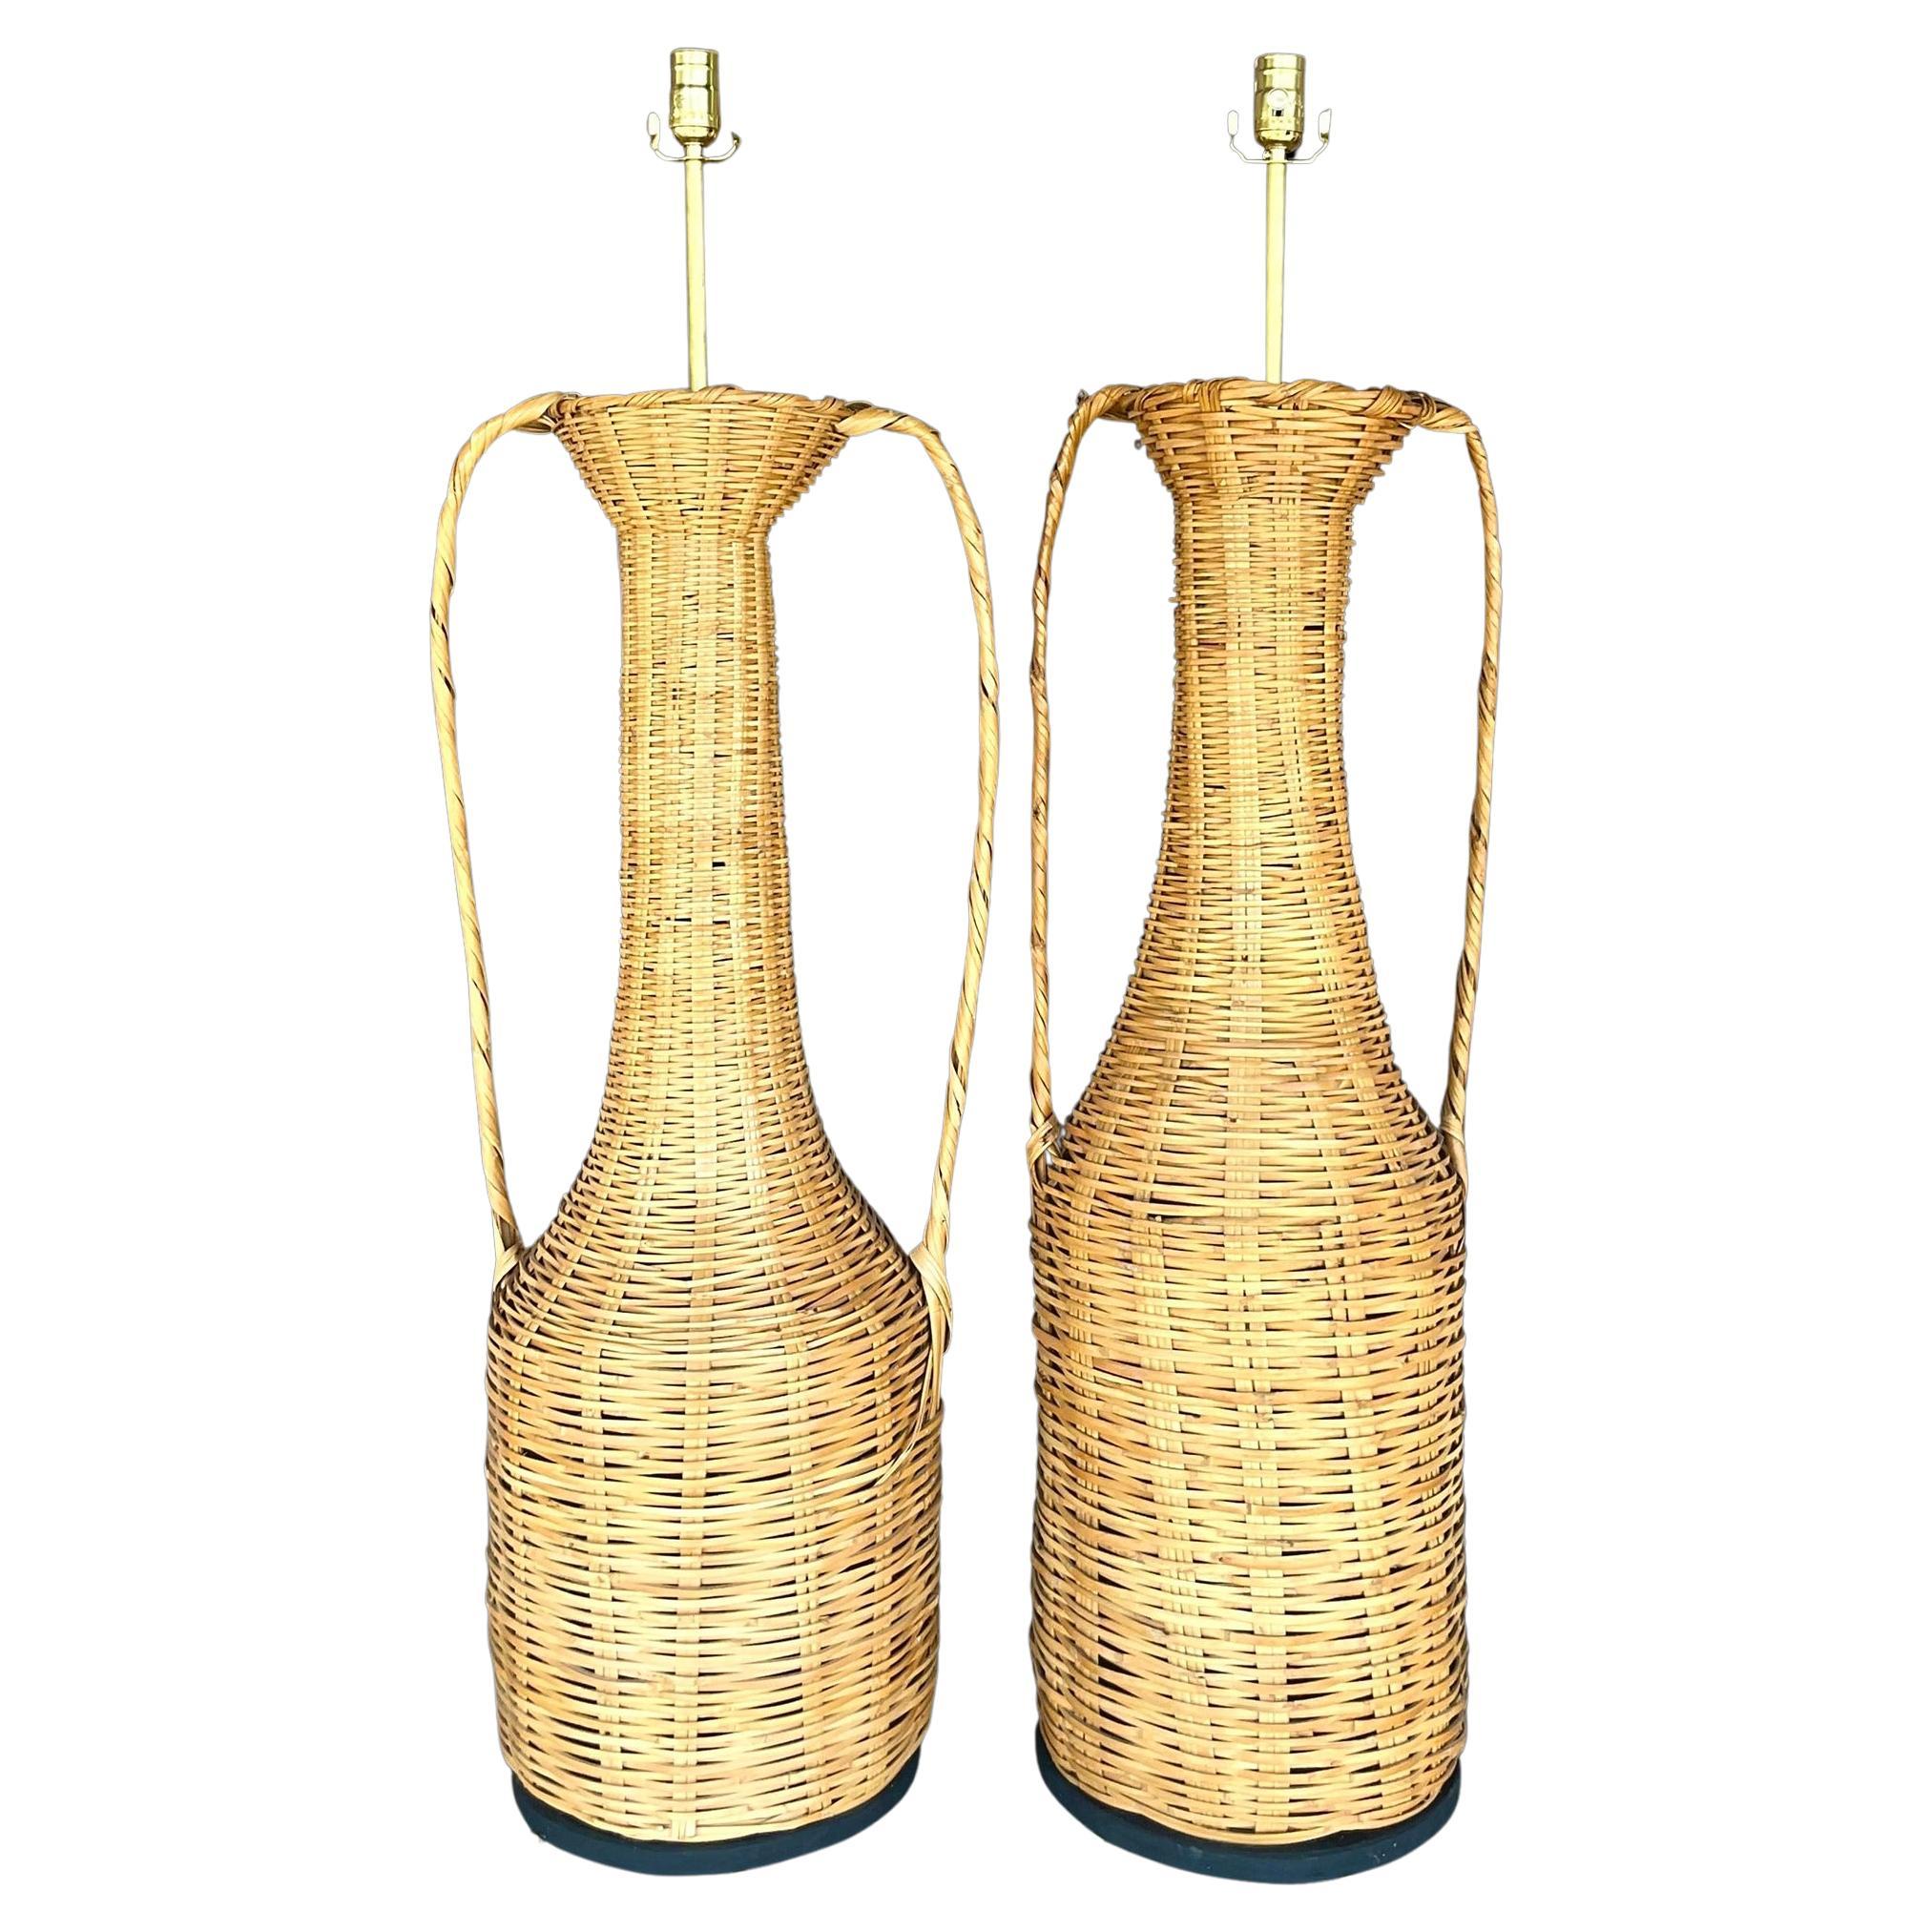 Vintage-Urnenlampen aus gewebtem Rattan von Boho, 2er-Set